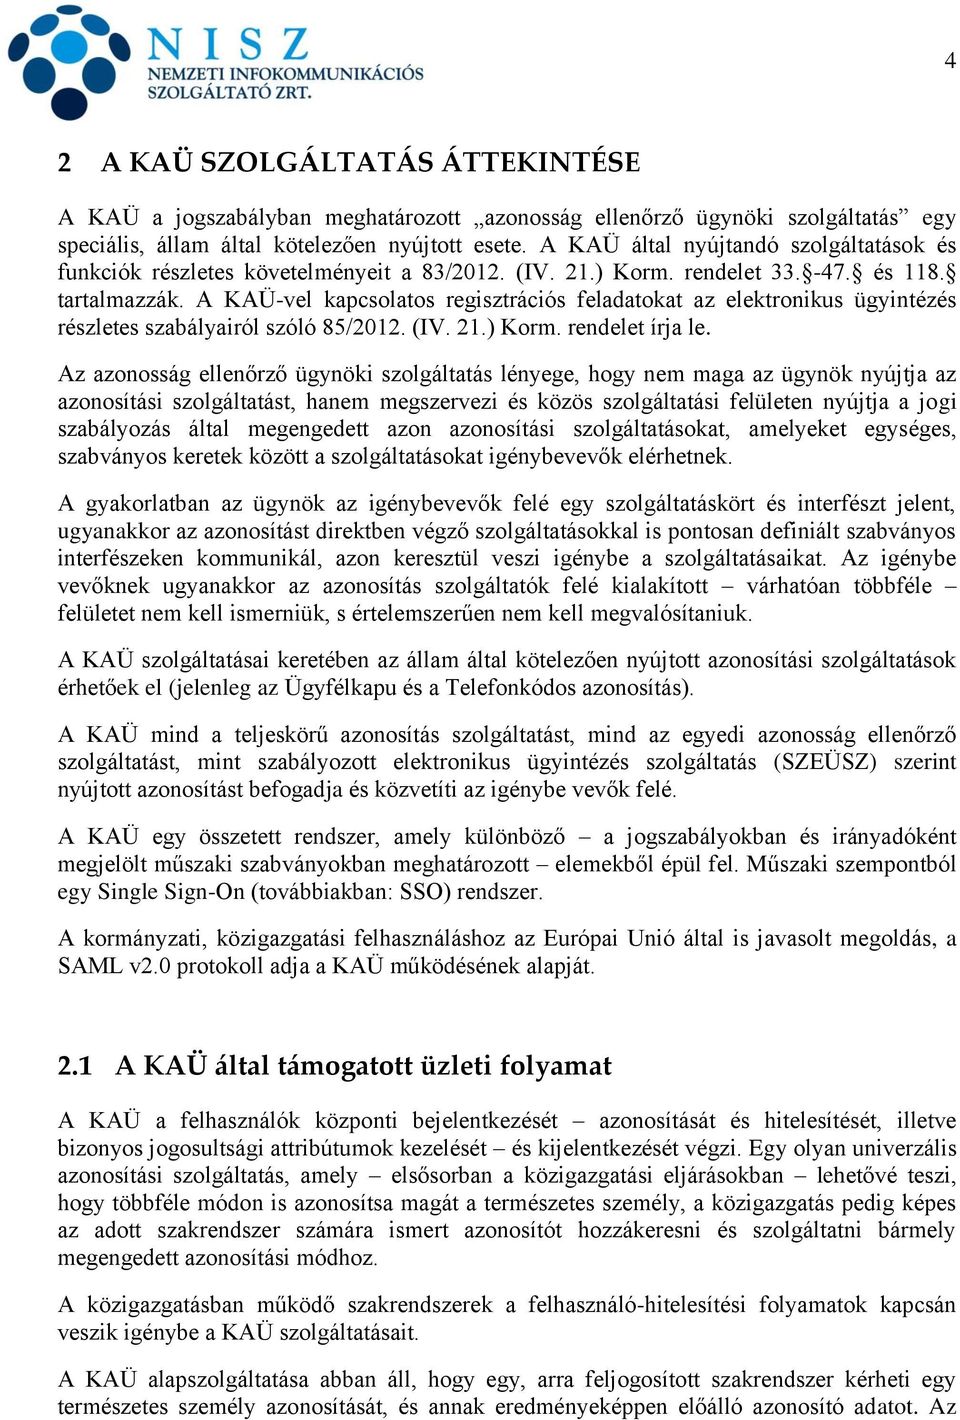 A KAÜ-vel kapcsolatos regisztrációs feladatokat az elektronikus ügyintézés részletes szabályairól szóló 85/2012. (IV. 21.) Korm. rendelet írja le.